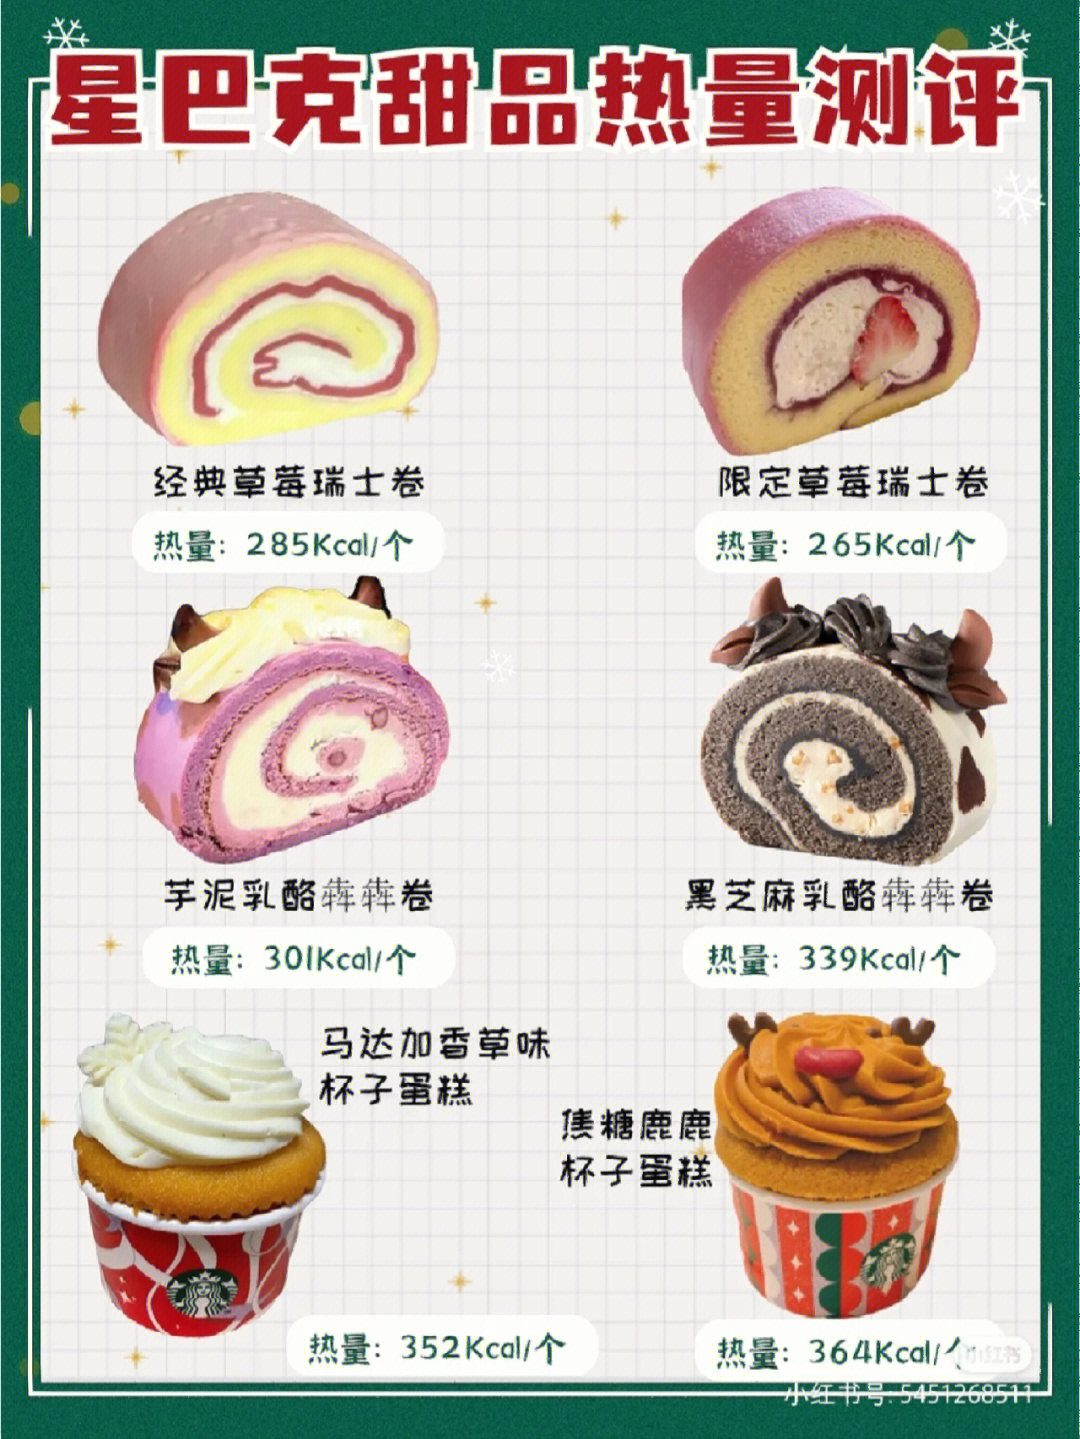 星巴克冰淇淋系列菜单图片